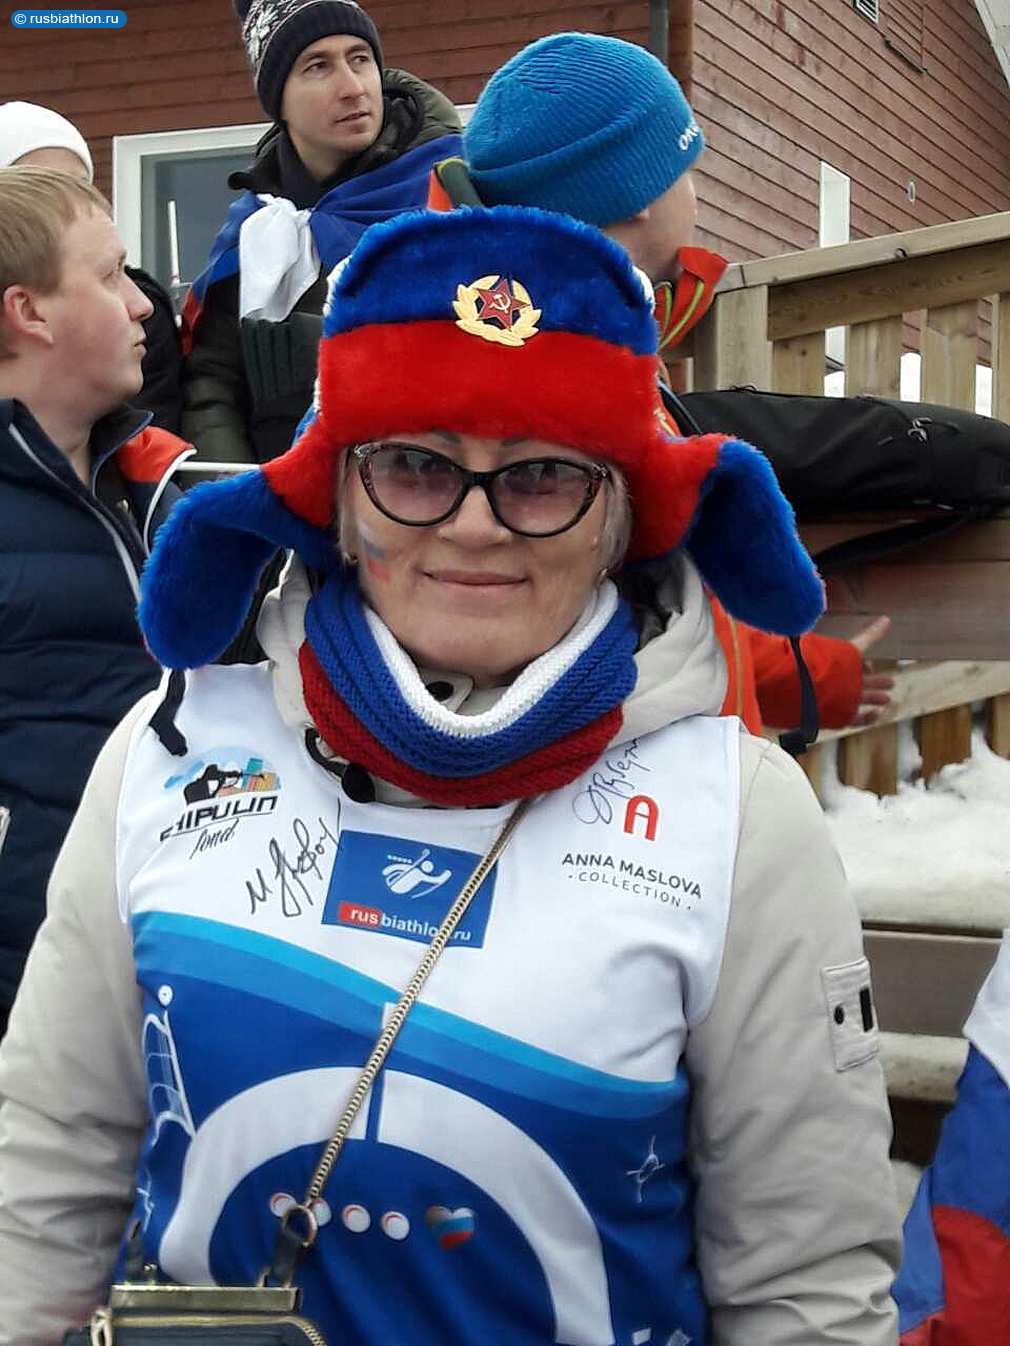 Фансборная России по биатлону на 8 этапе Кубка Мира в финском Контиолахти